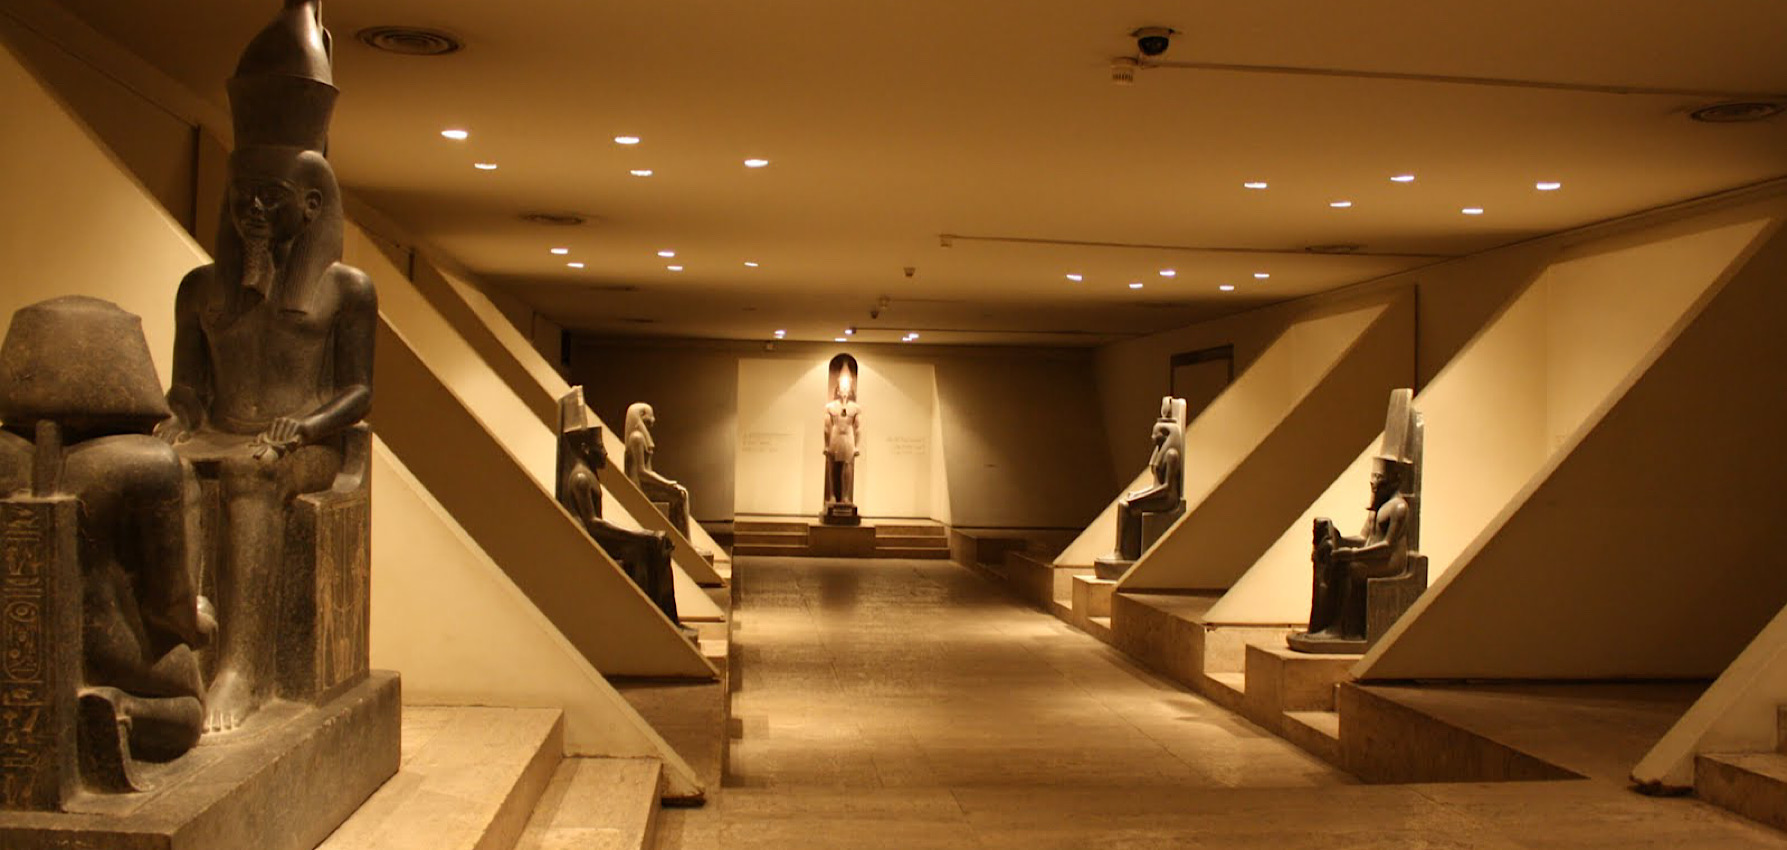 Luxor Museum